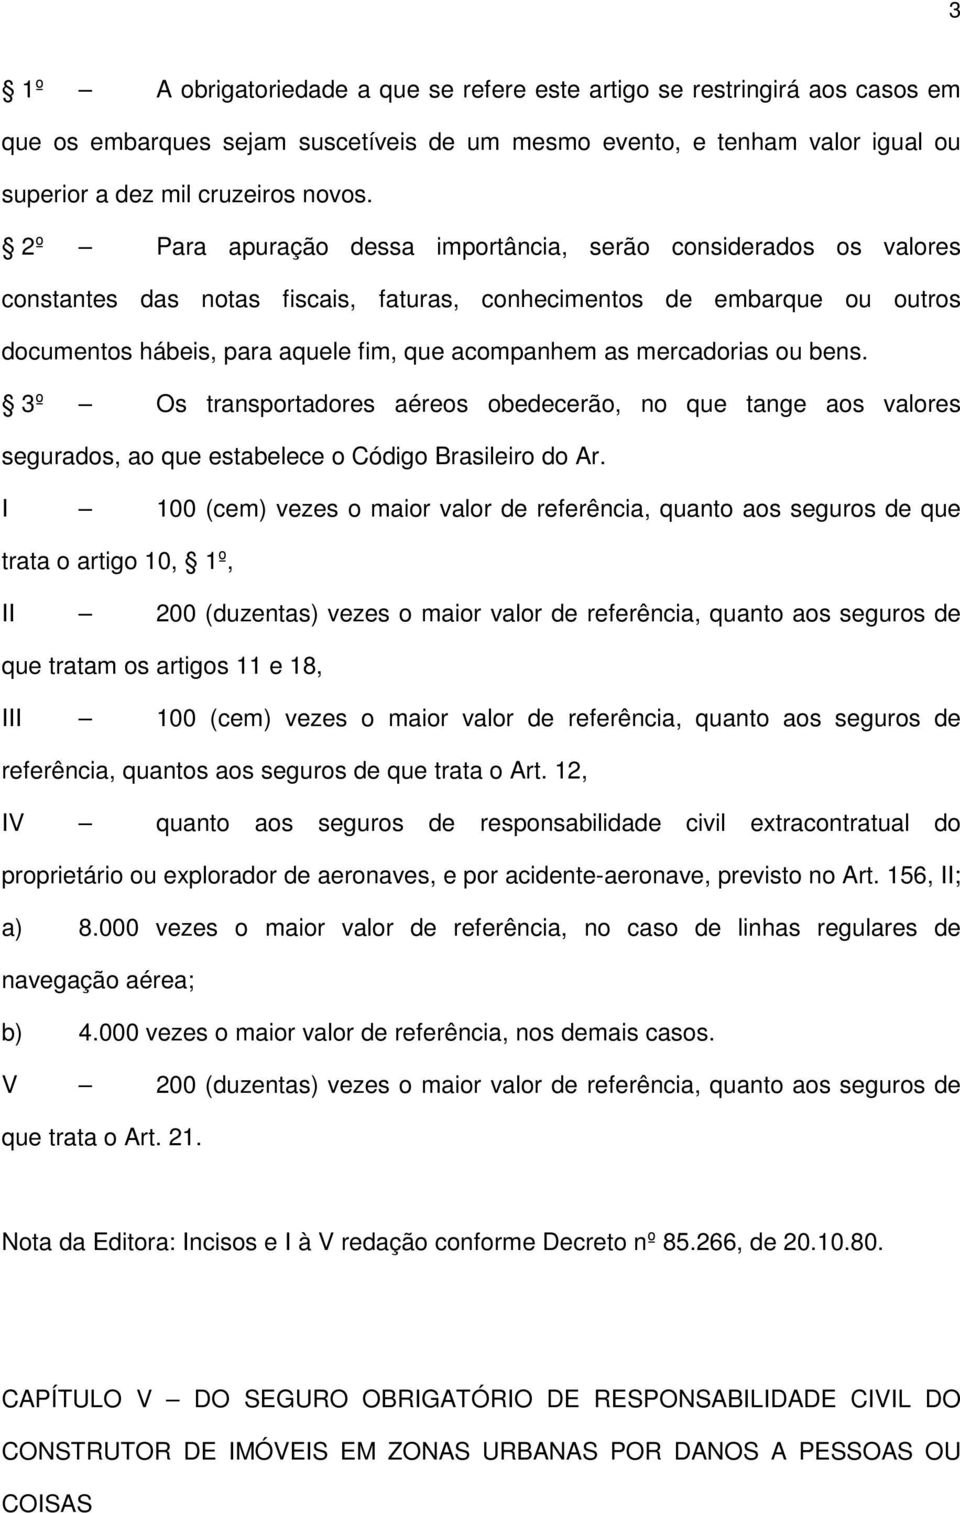 mercadorias ou bens. 3º Os transportadores aéreos obedecerão, no que tange aos valores segurados, ao que estabelece o Código Brasileiro do Ar.